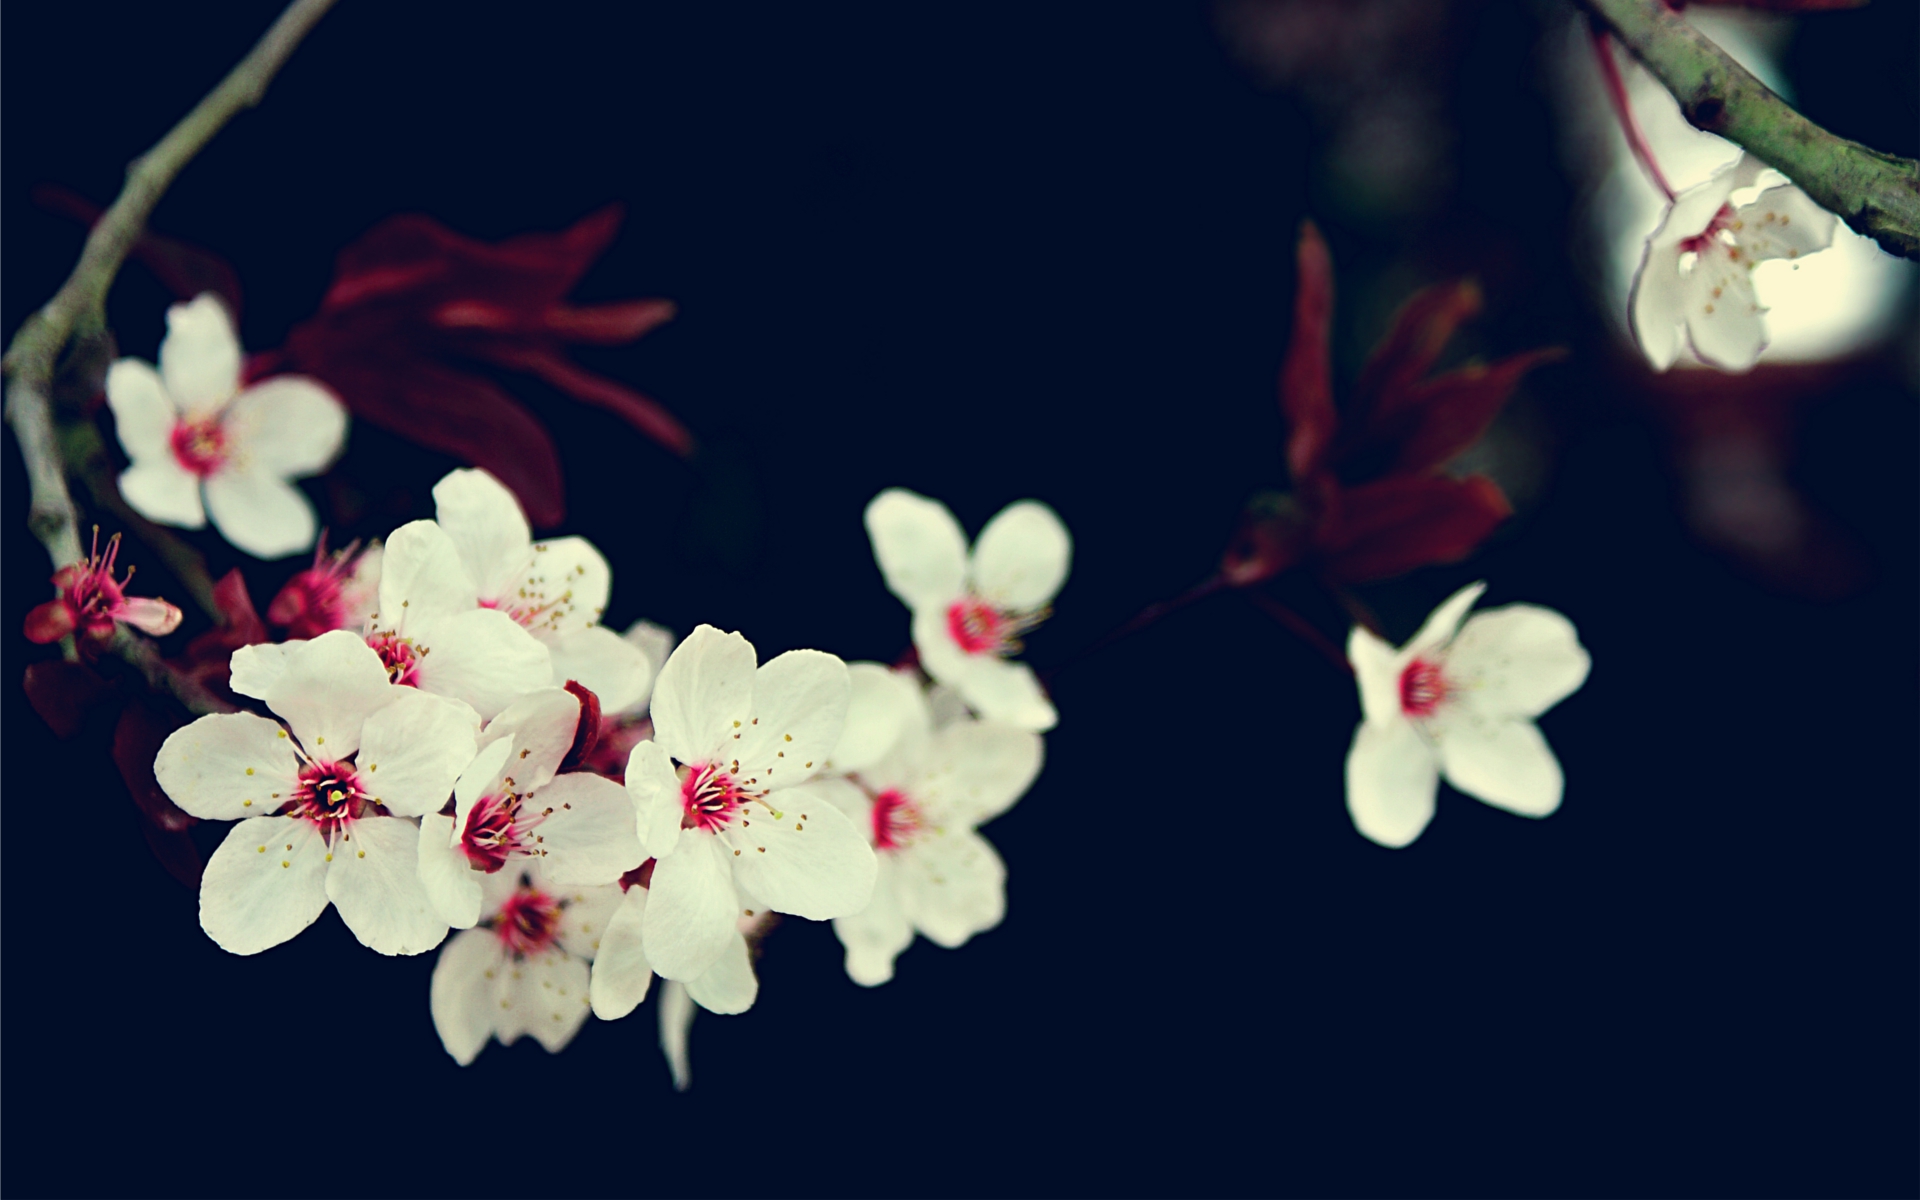 cherry blossoms, flowers, white flowers - desktop wallpaper